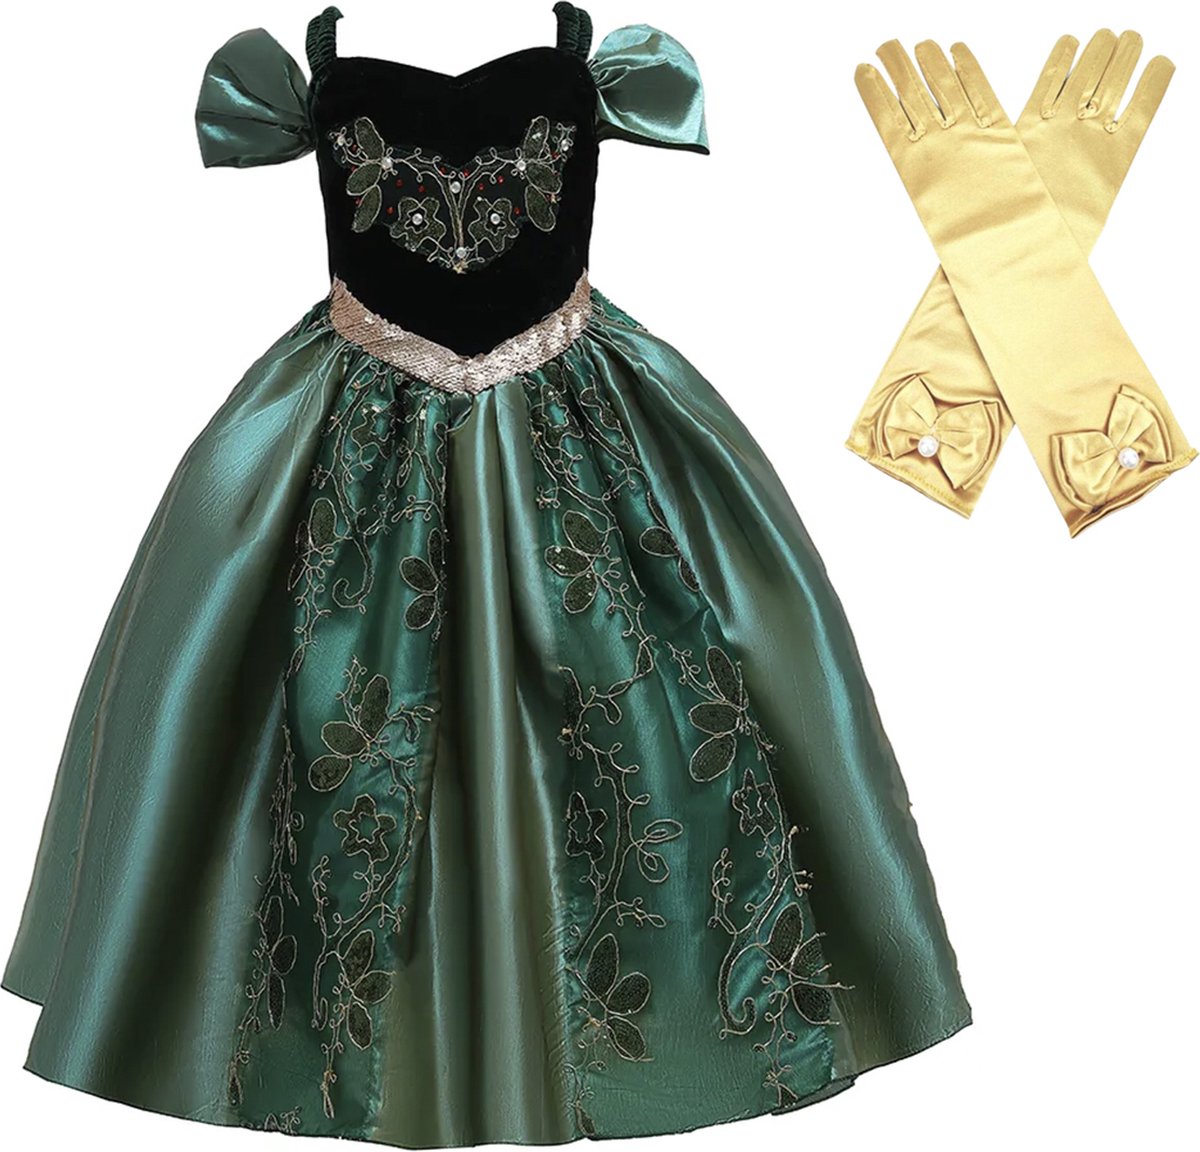 Het Betere Merk - Groene jurk - Luxe Prinsessenjurk - maat 92/98 (100) - Verkleedkleren meisje - Carnavalskleding meisje - Lange goudkleurige prinsessenhandschoenen voor bij je verkleedjurk - cadeau meisje - Kleed